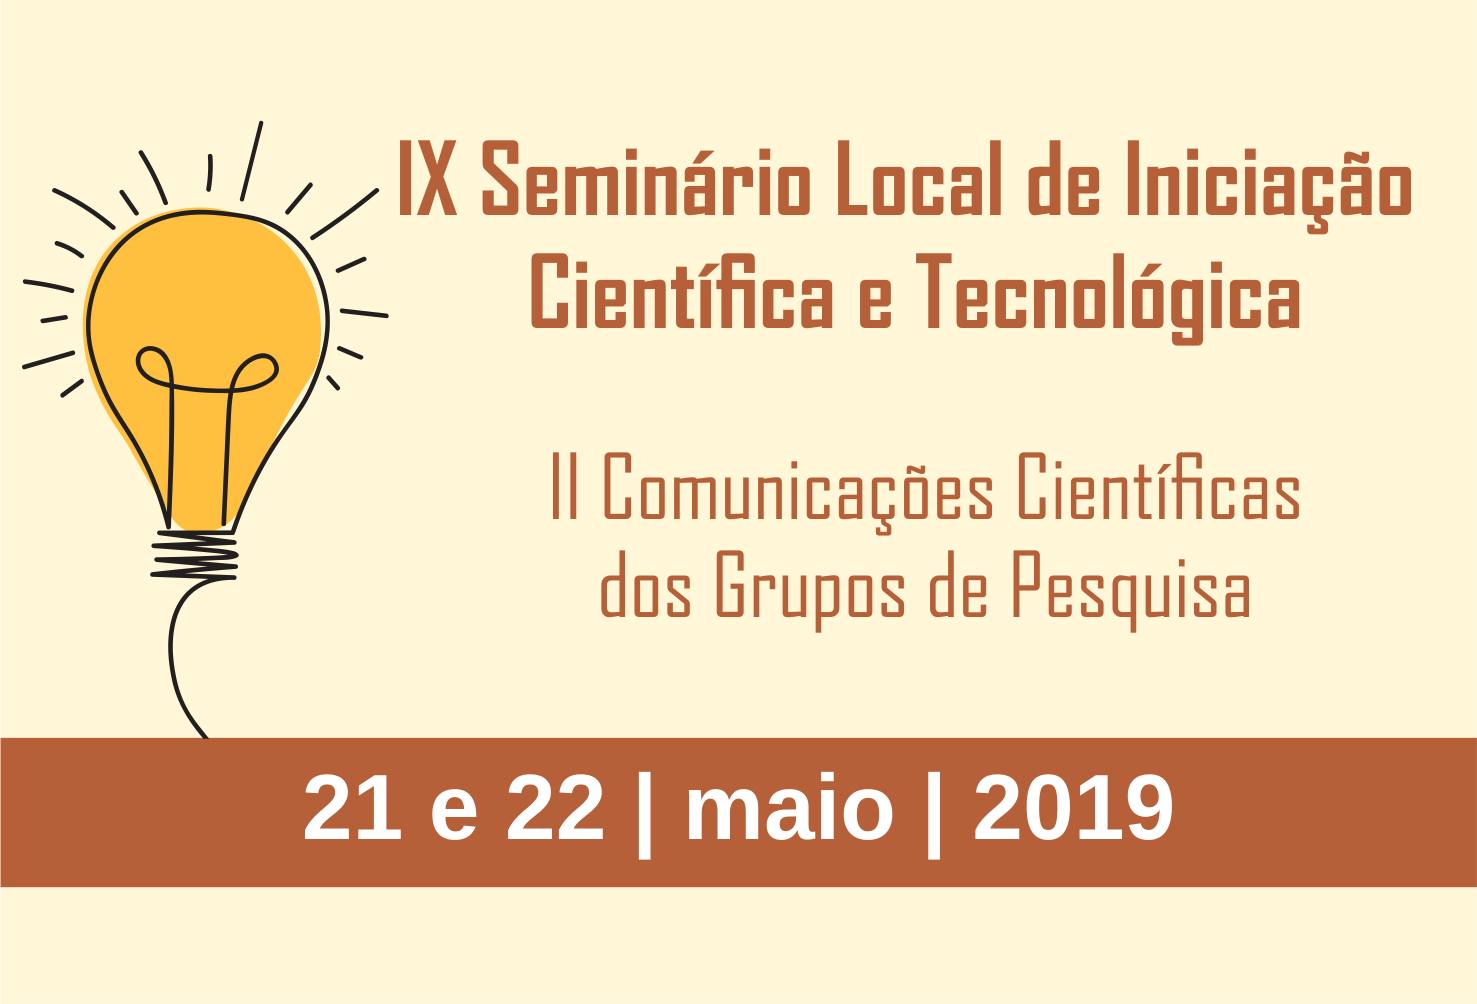 Banner de divulgação IX Seminário de Iniciação Científica e Tecnológica 